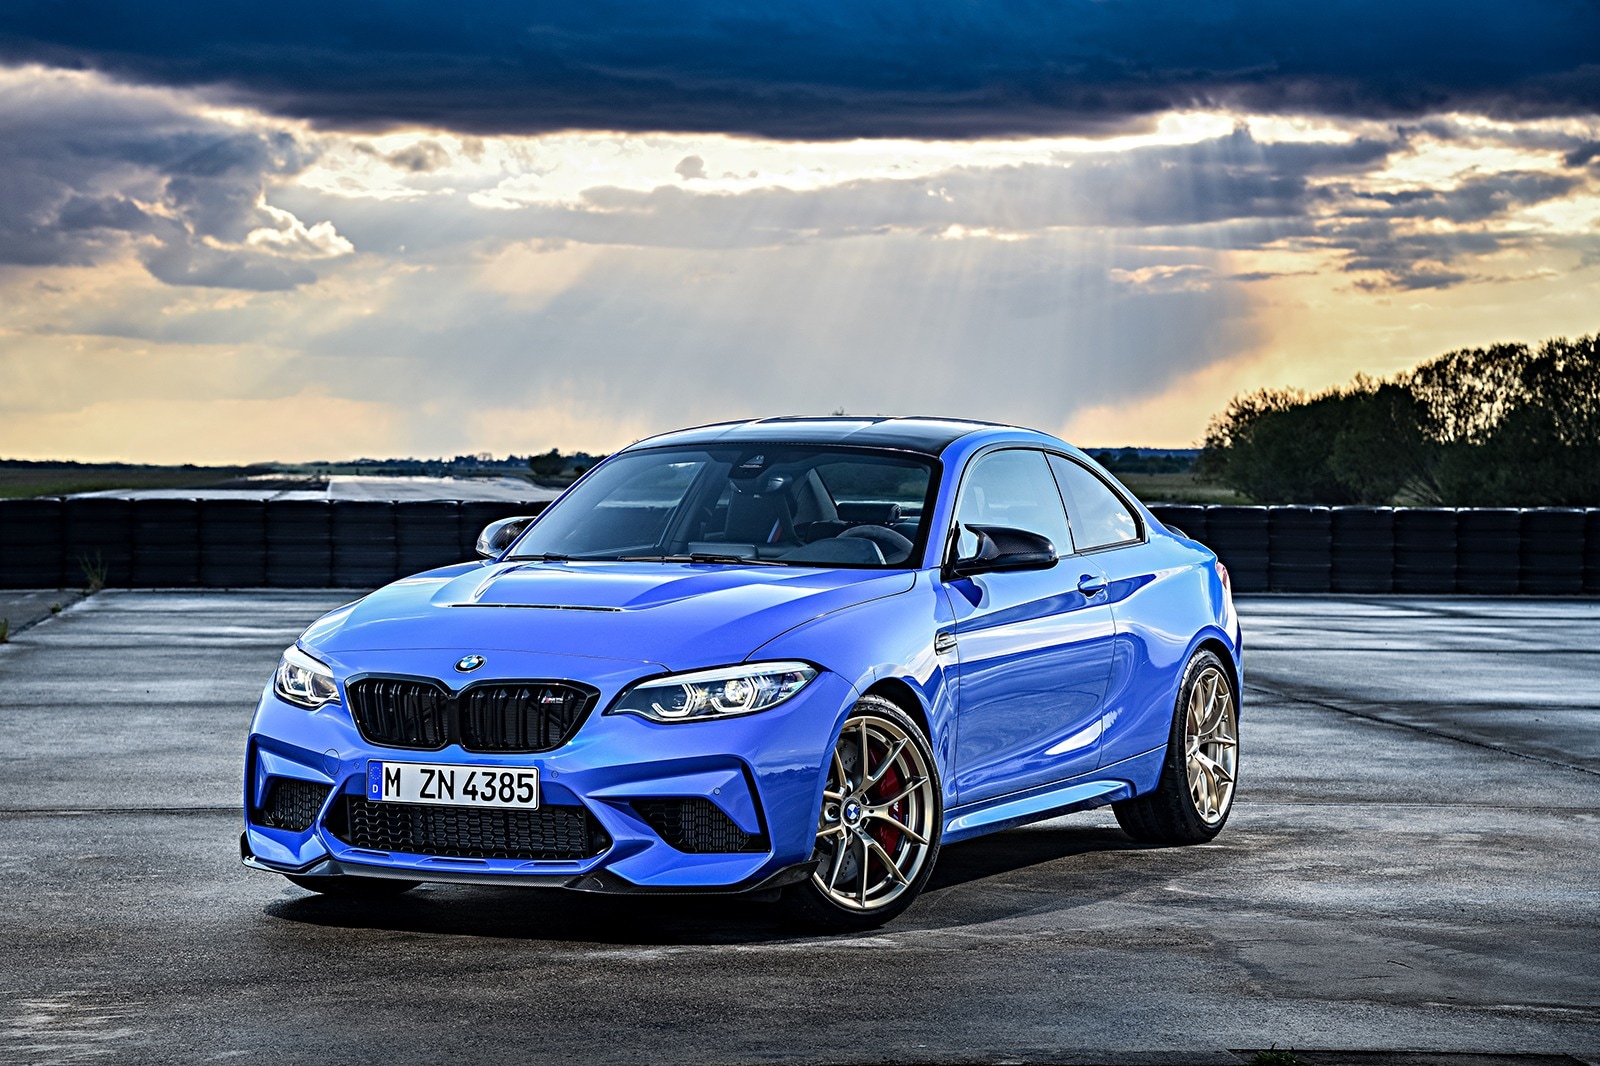 Unrivaled Luxury: The 2020 BMW M2 CS